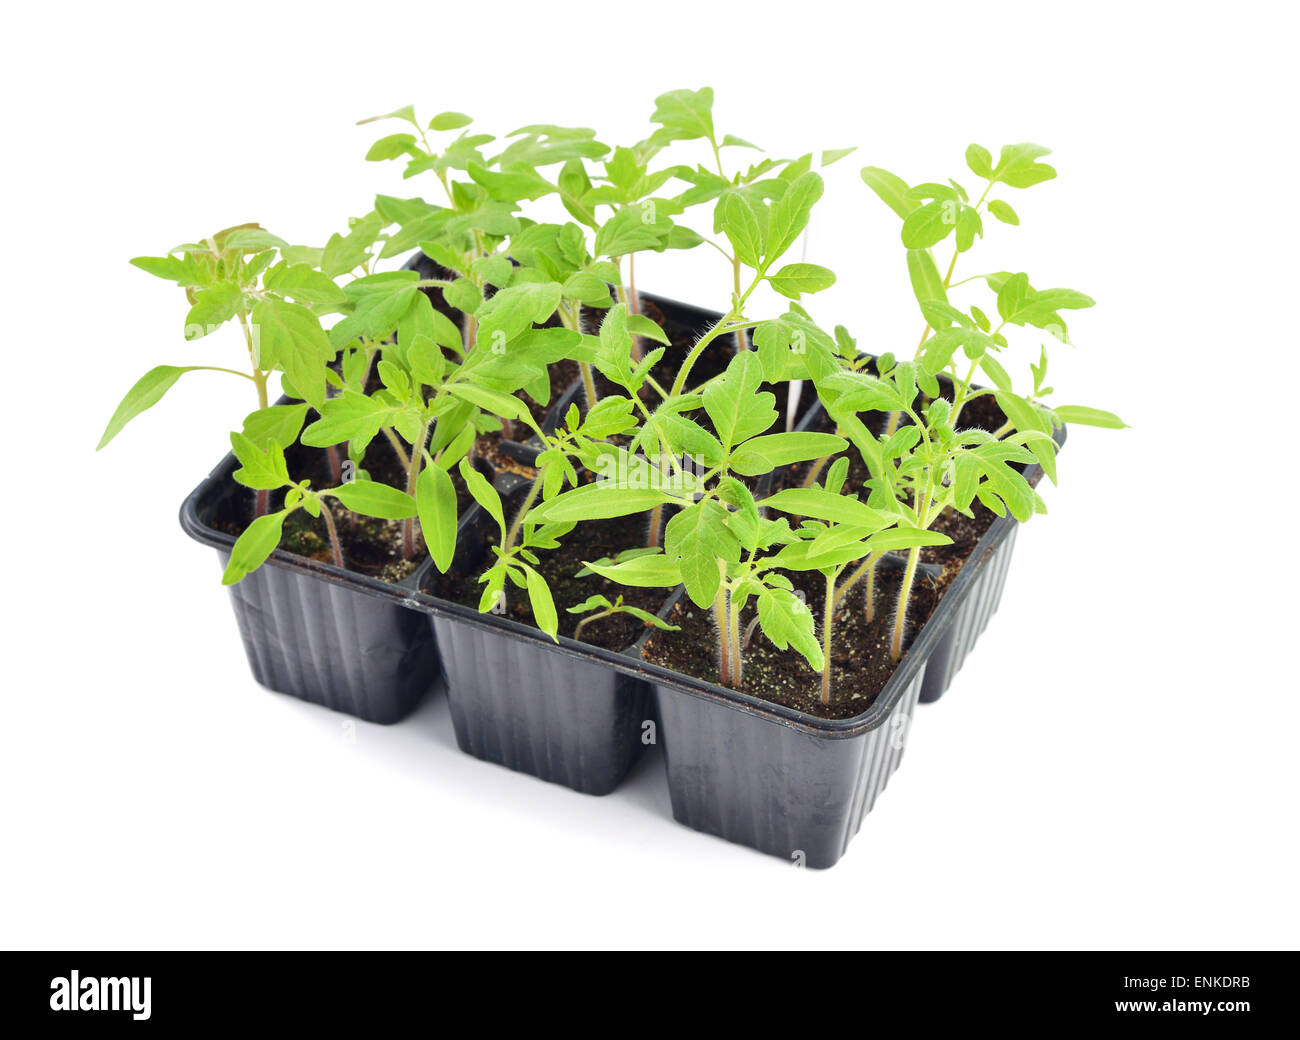 Tomaten-Setzlinge in einen Topf isoliert auf weißem Hintergrund.  Jungpflanzen in Kunststoff Zellen; Bio-Gärtnerei Stockfotografie - Alamy